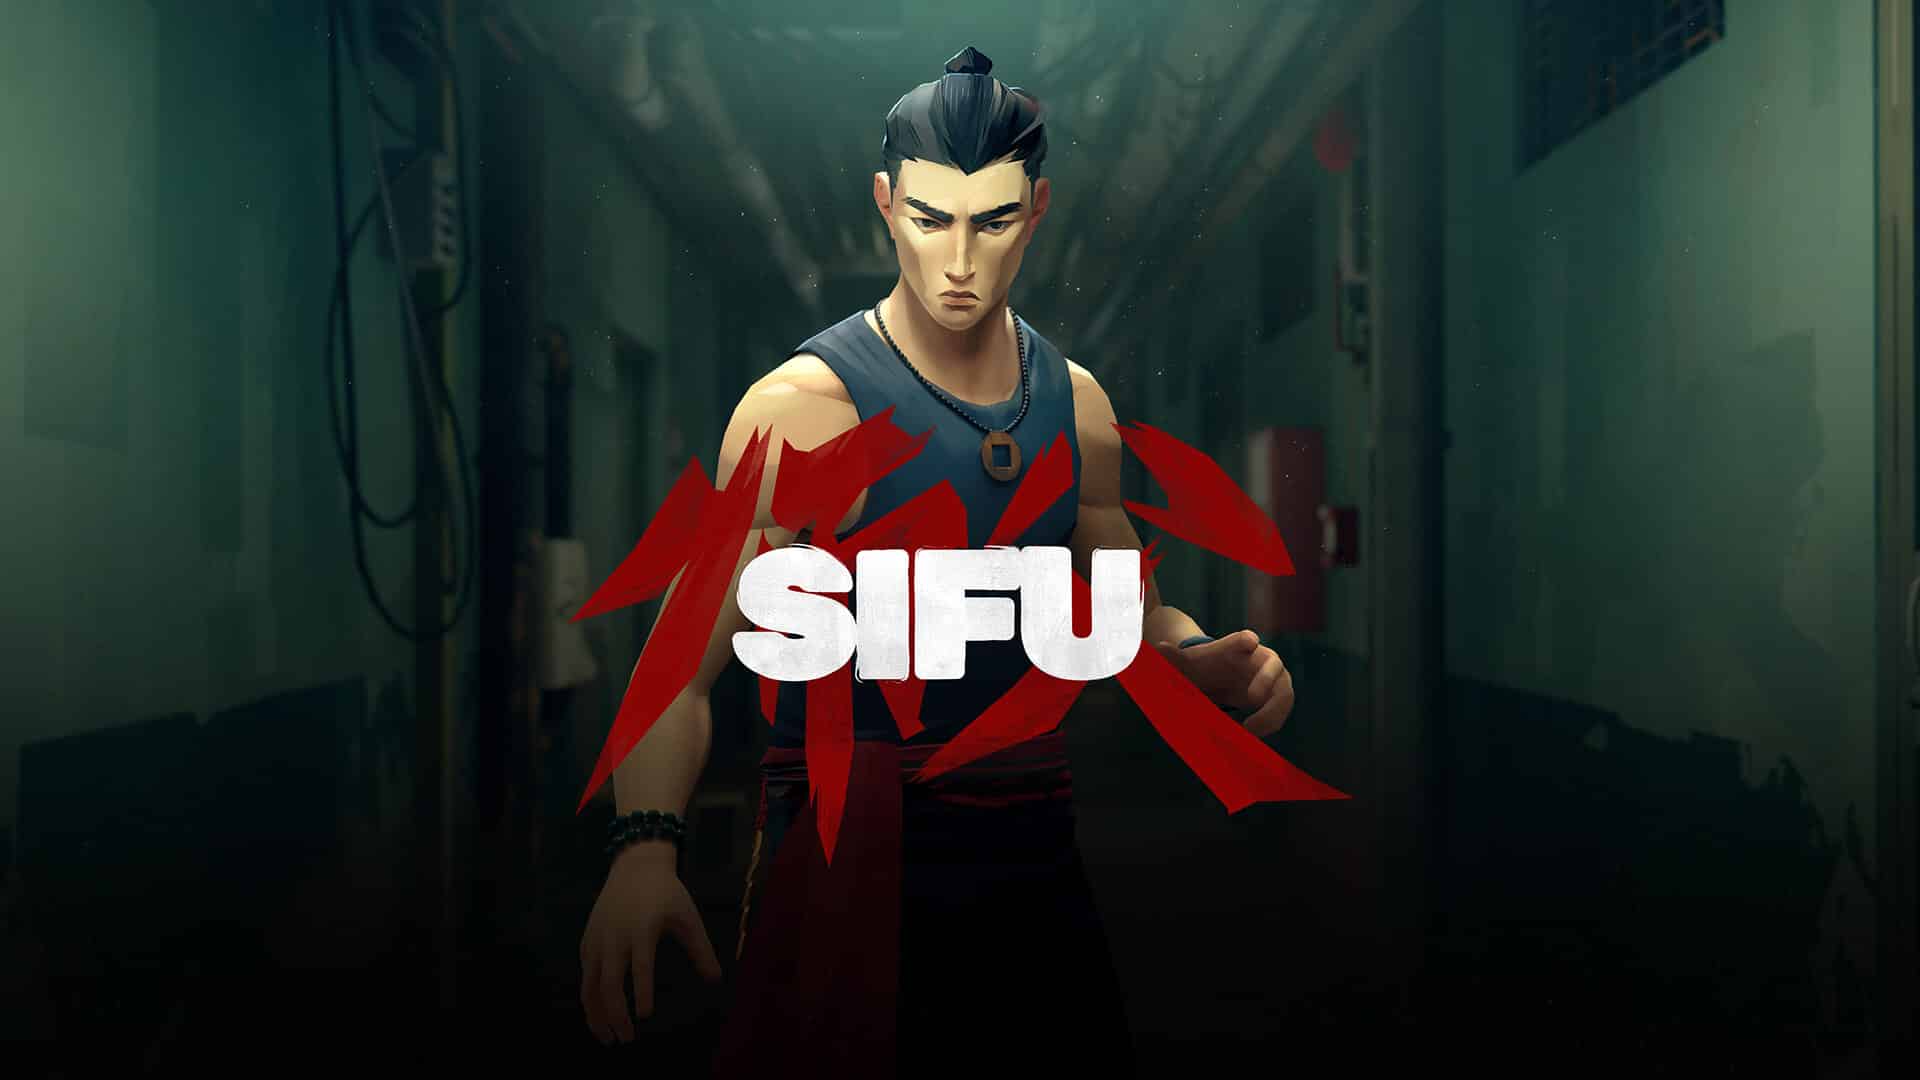 Sifu Promotional Art